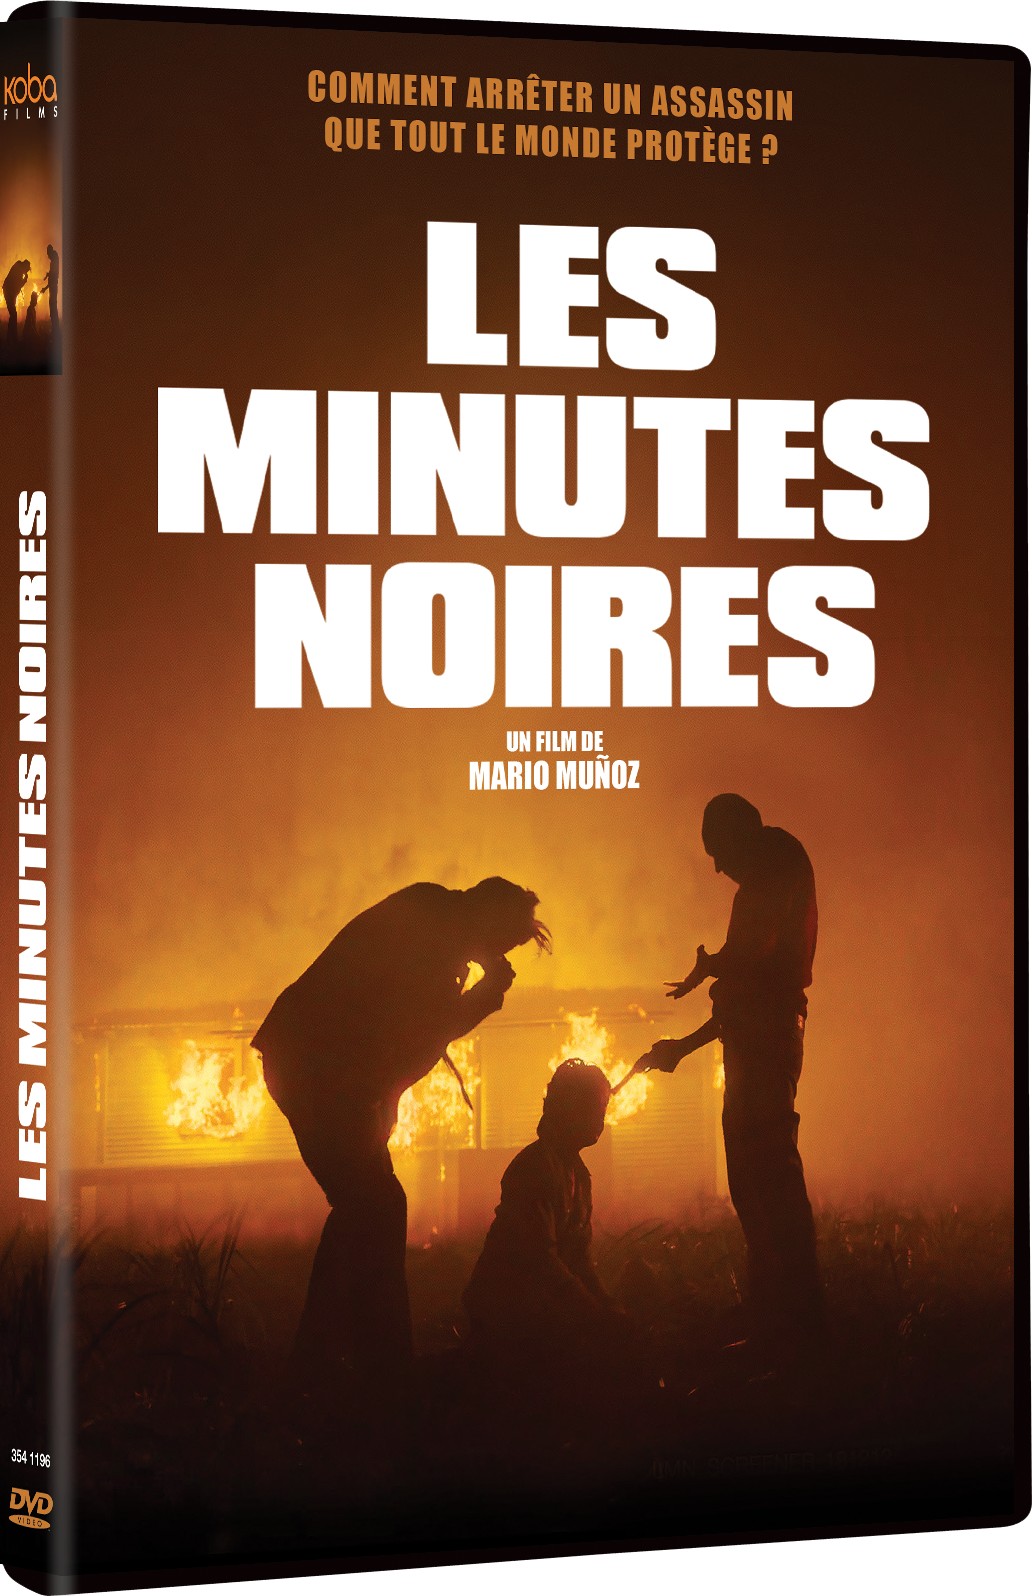 LES MINUTES NOIRES - DVD